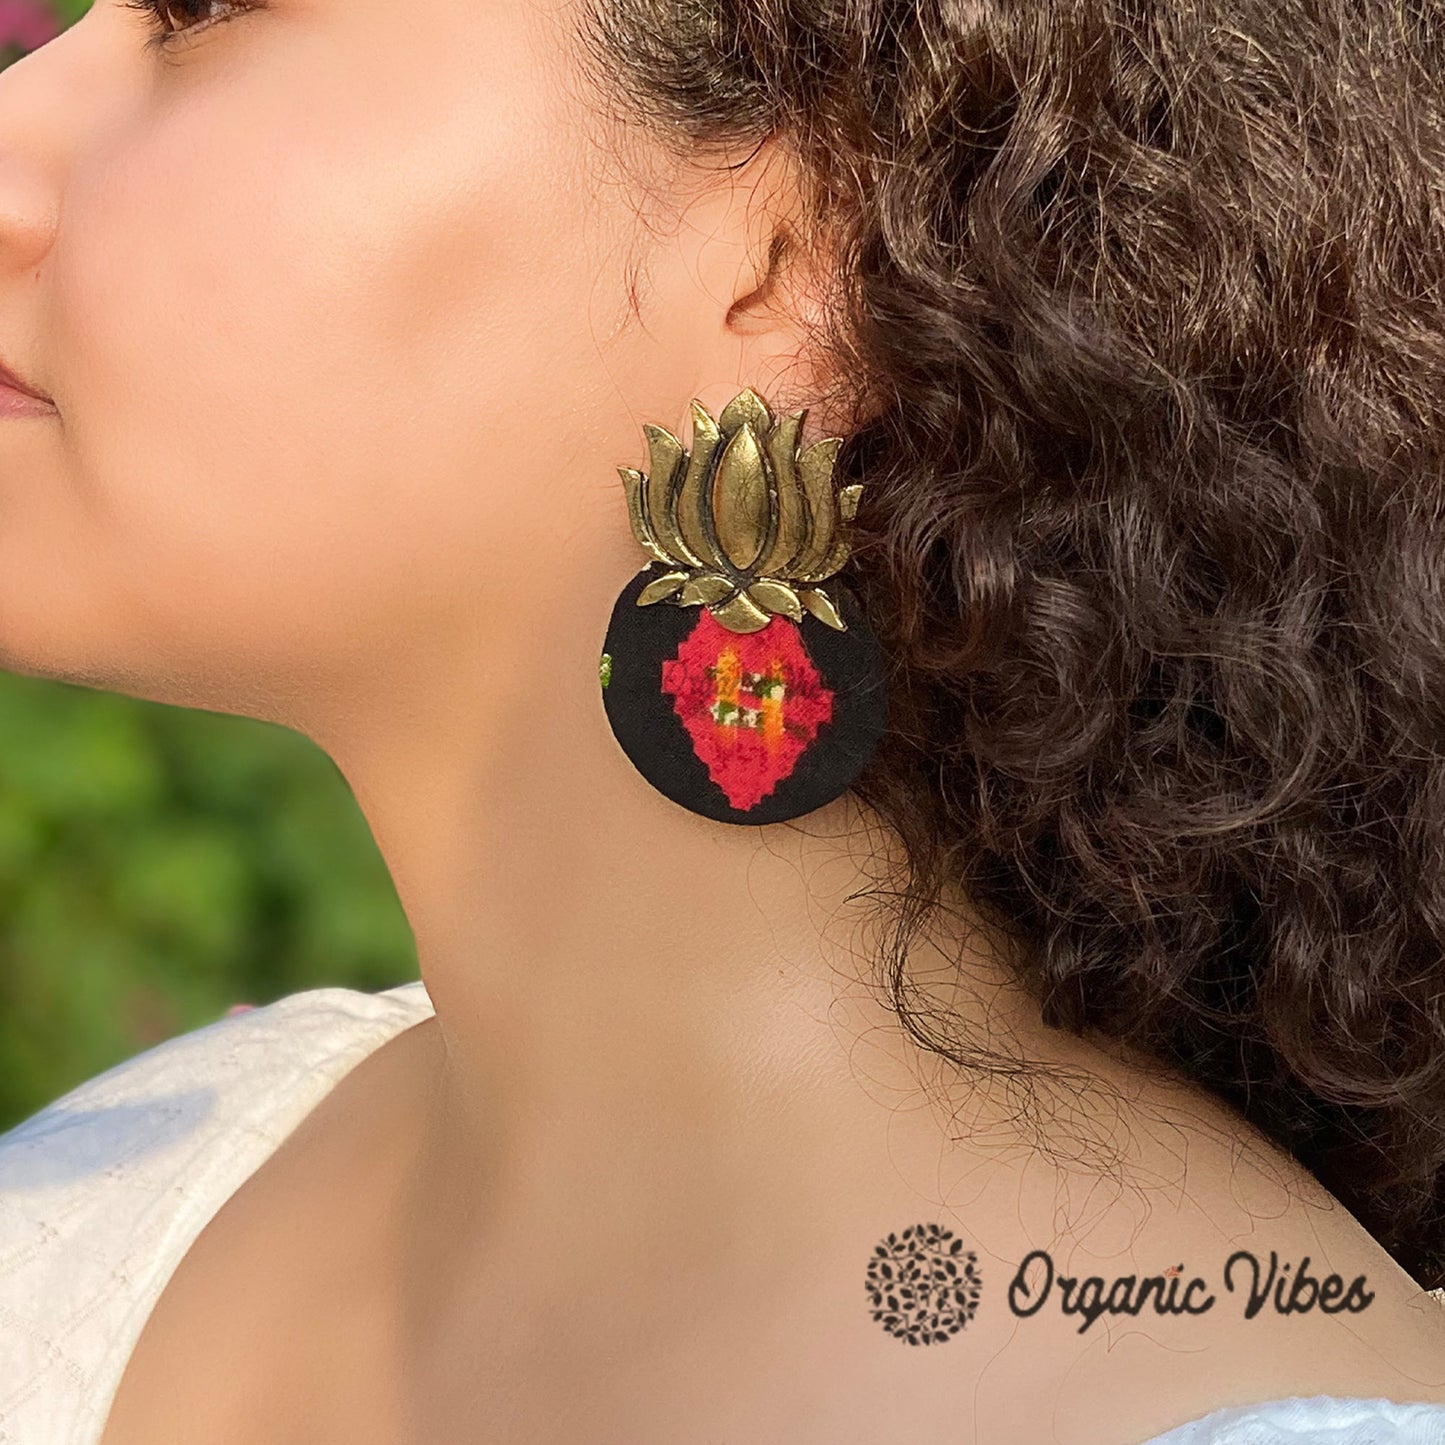 Organic Vibes Handmade Lotus Design Black Studded Fabric Earrings For Women